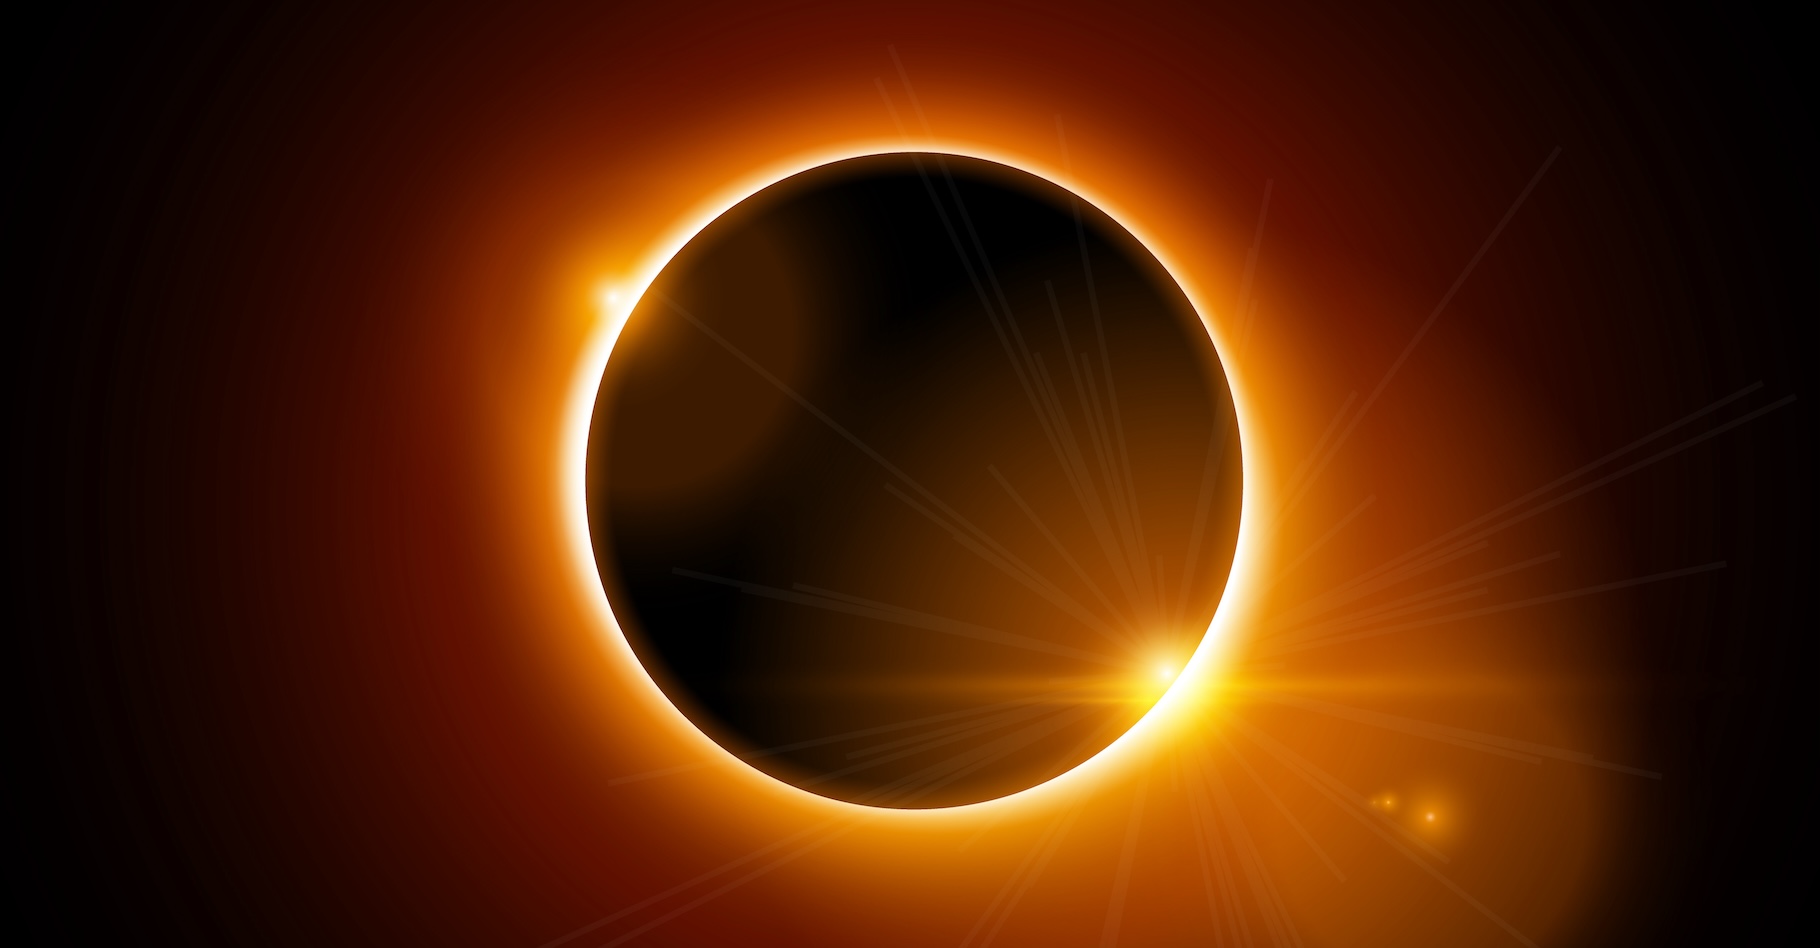 La couronne solaire, c’est l’anneau qui apparaît lors d’une éclipse totale de Soleil. Et c’est dans cette région de l’atmosphère de notre étoile qu’un immense trou vient d’être observé. © kolonko, Adobe Stock